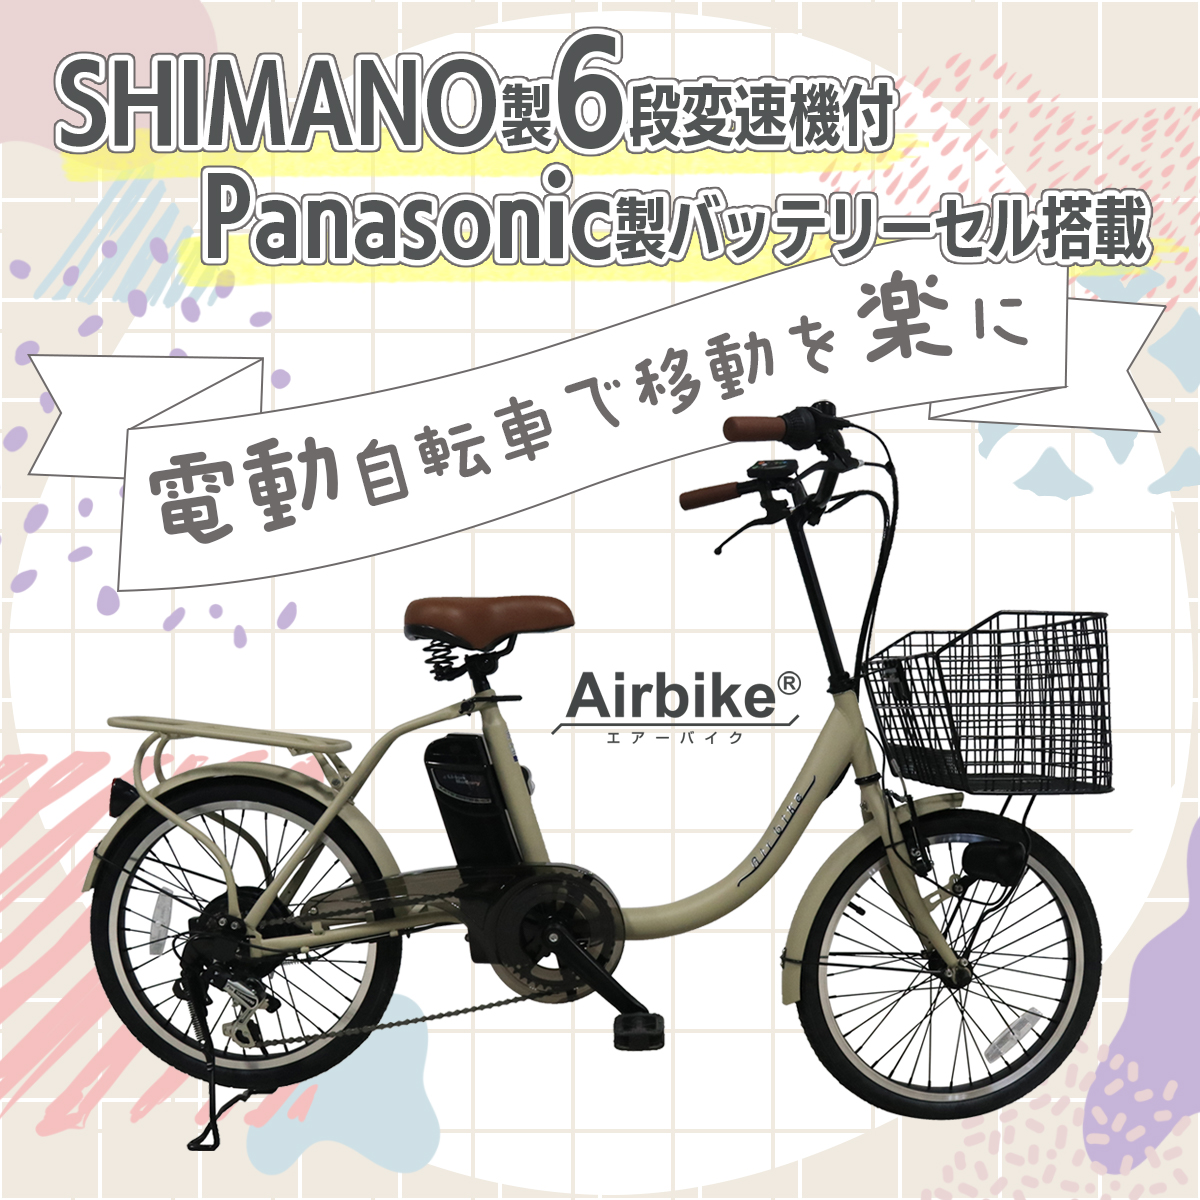 【今だけ先着30台特別価格】電動自転車 パナソ...の詳細画像1